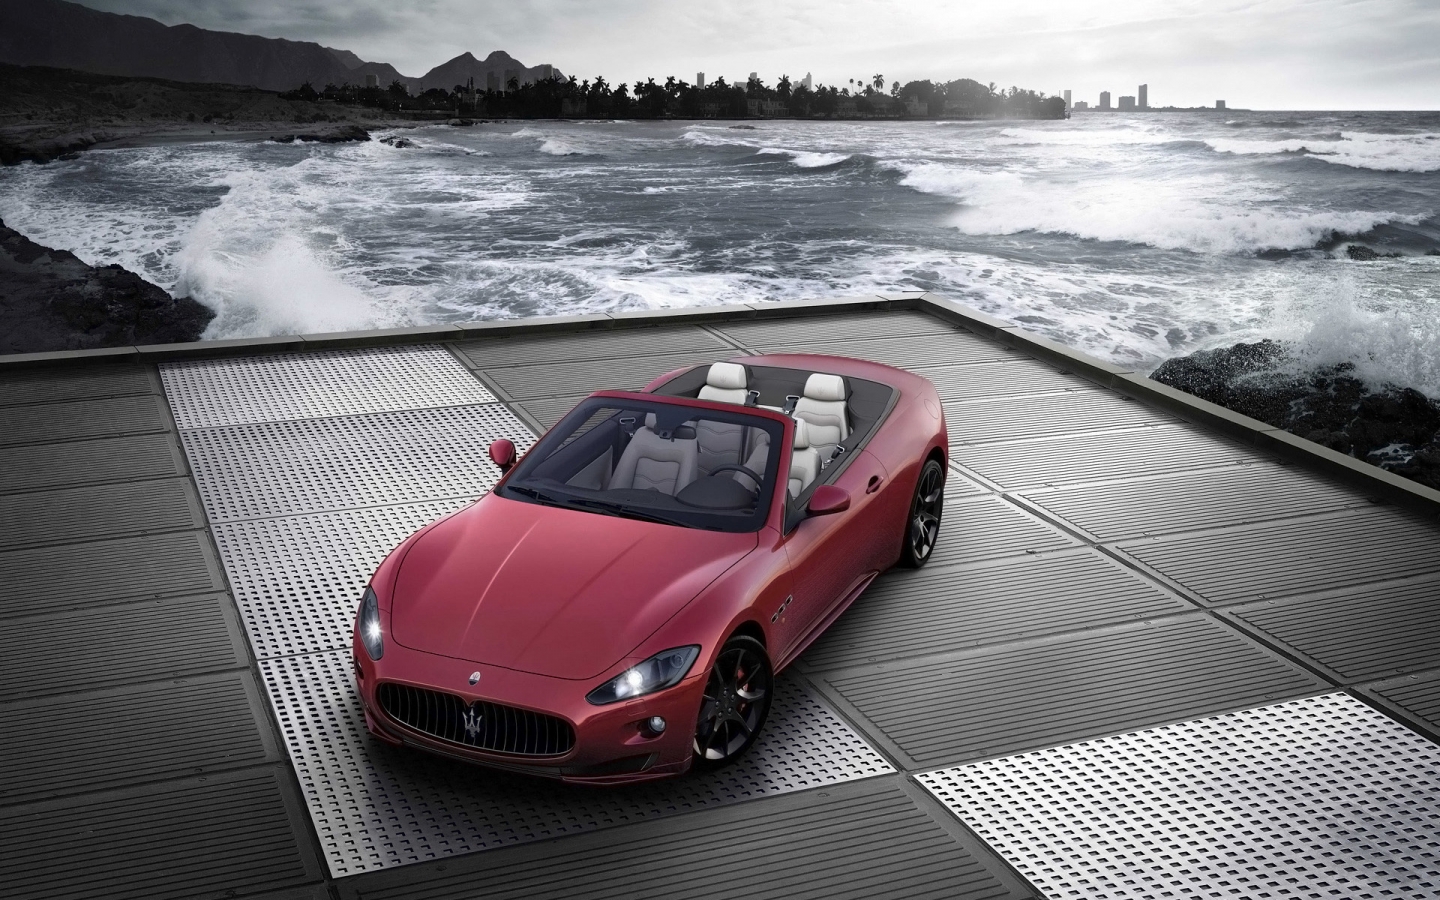 Maserati GranCabrio Sport 2011 for 1440 x 900 widescreen resolution